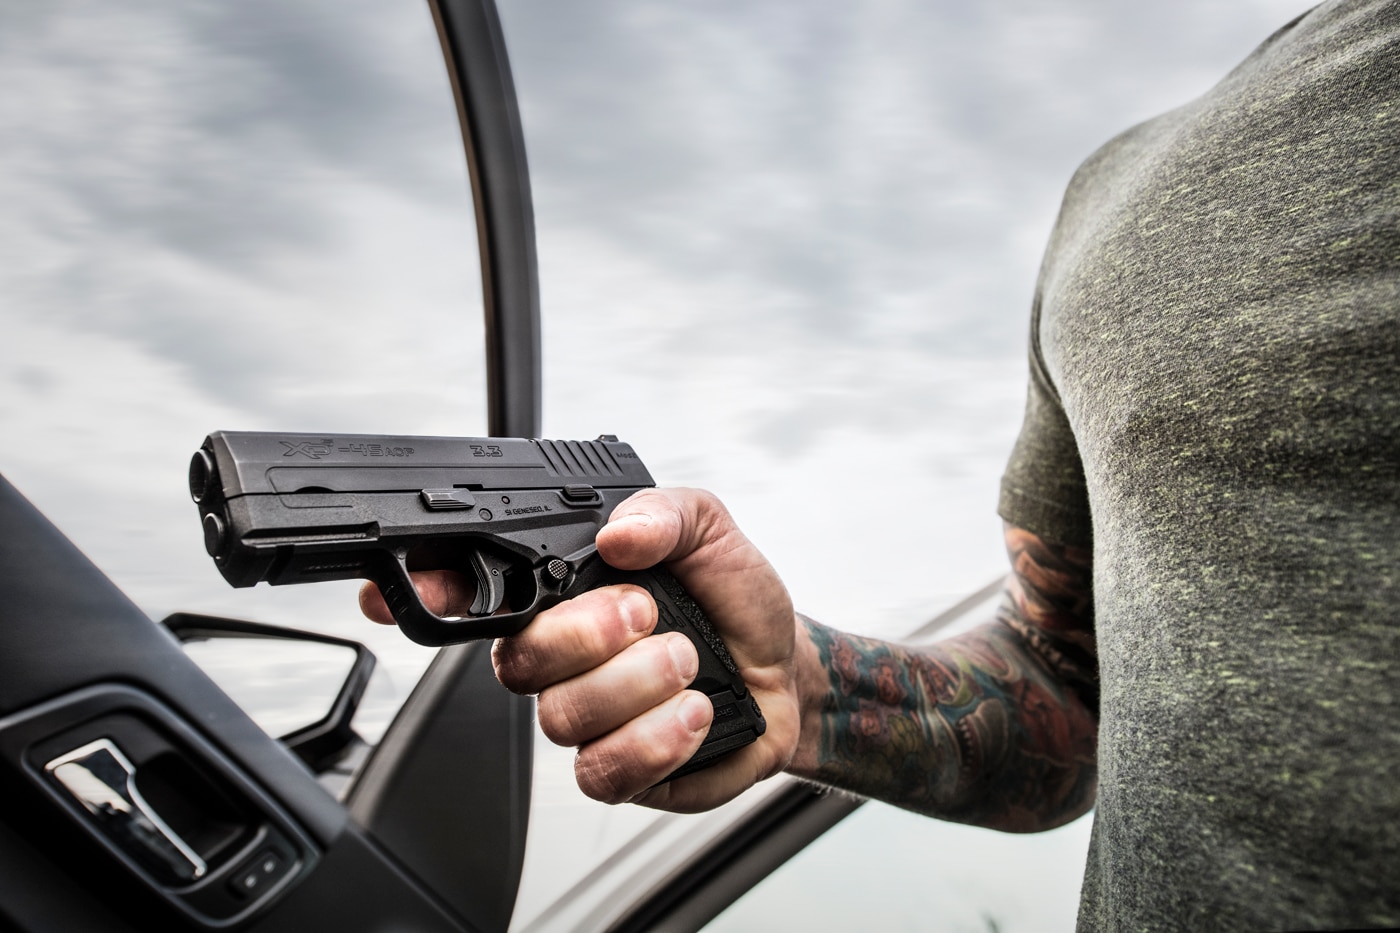 open carry of handgun in vehicle